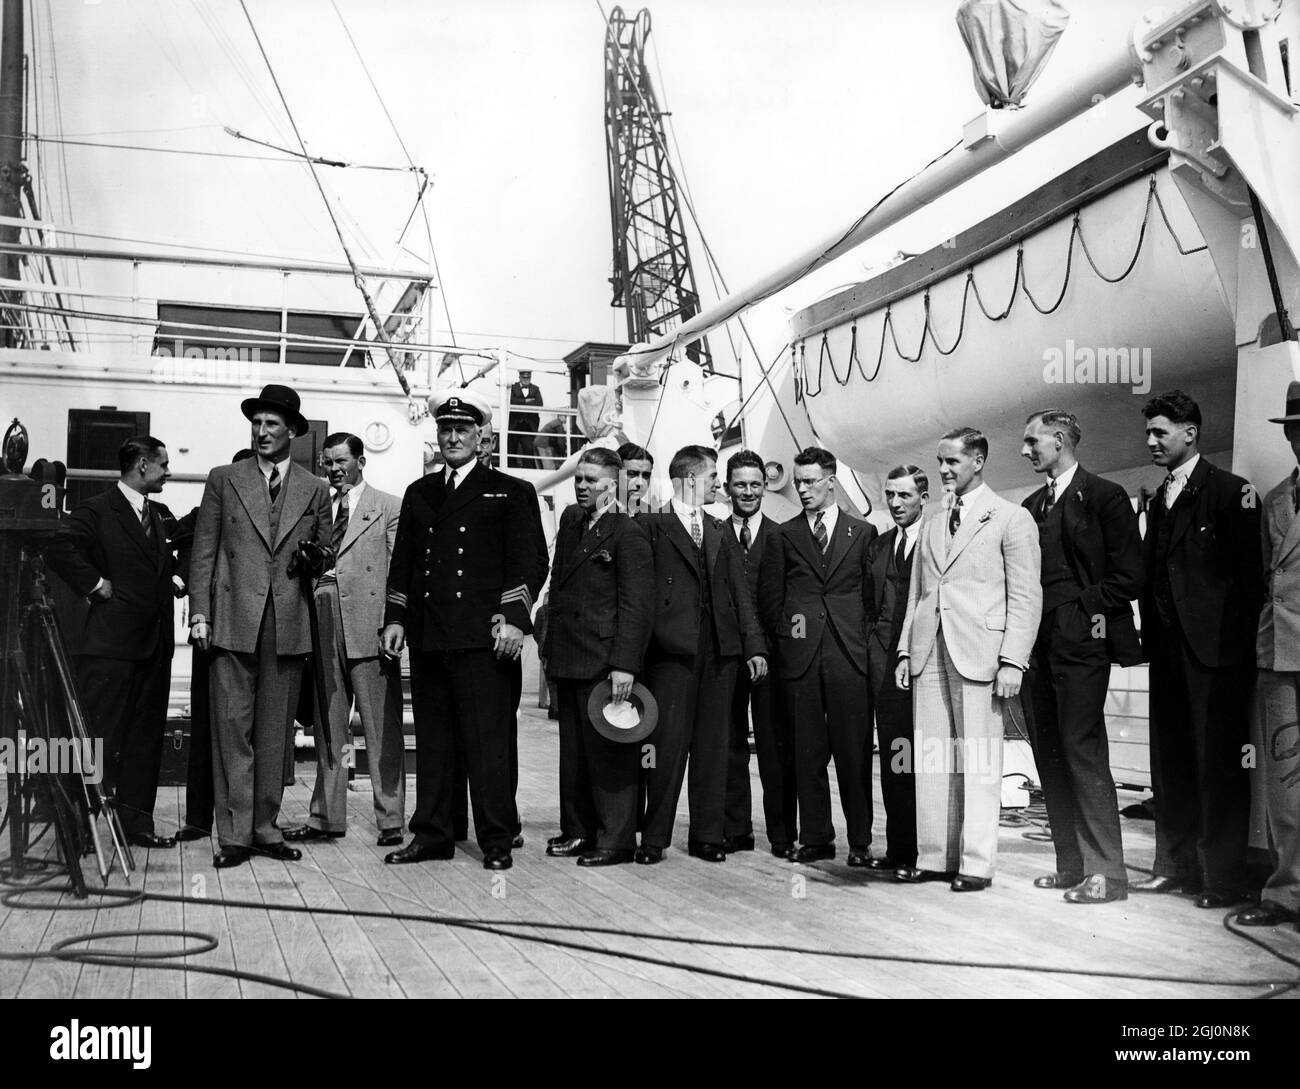 L'équipe de cricket de l'Angleterre 1932 est prête à quitter les docks de Tilbury, Londres, Angleterre. Douglas Jardine (capitaine) est montré à gauche avec un chapeau. La série de cendres de 1932-3 a été infâme pour la théorie des jambes de Jardine, autrement connu sous le nom de Bodyline. 17 septembre 1932 ©Topham - TopFoto Banque D'Images